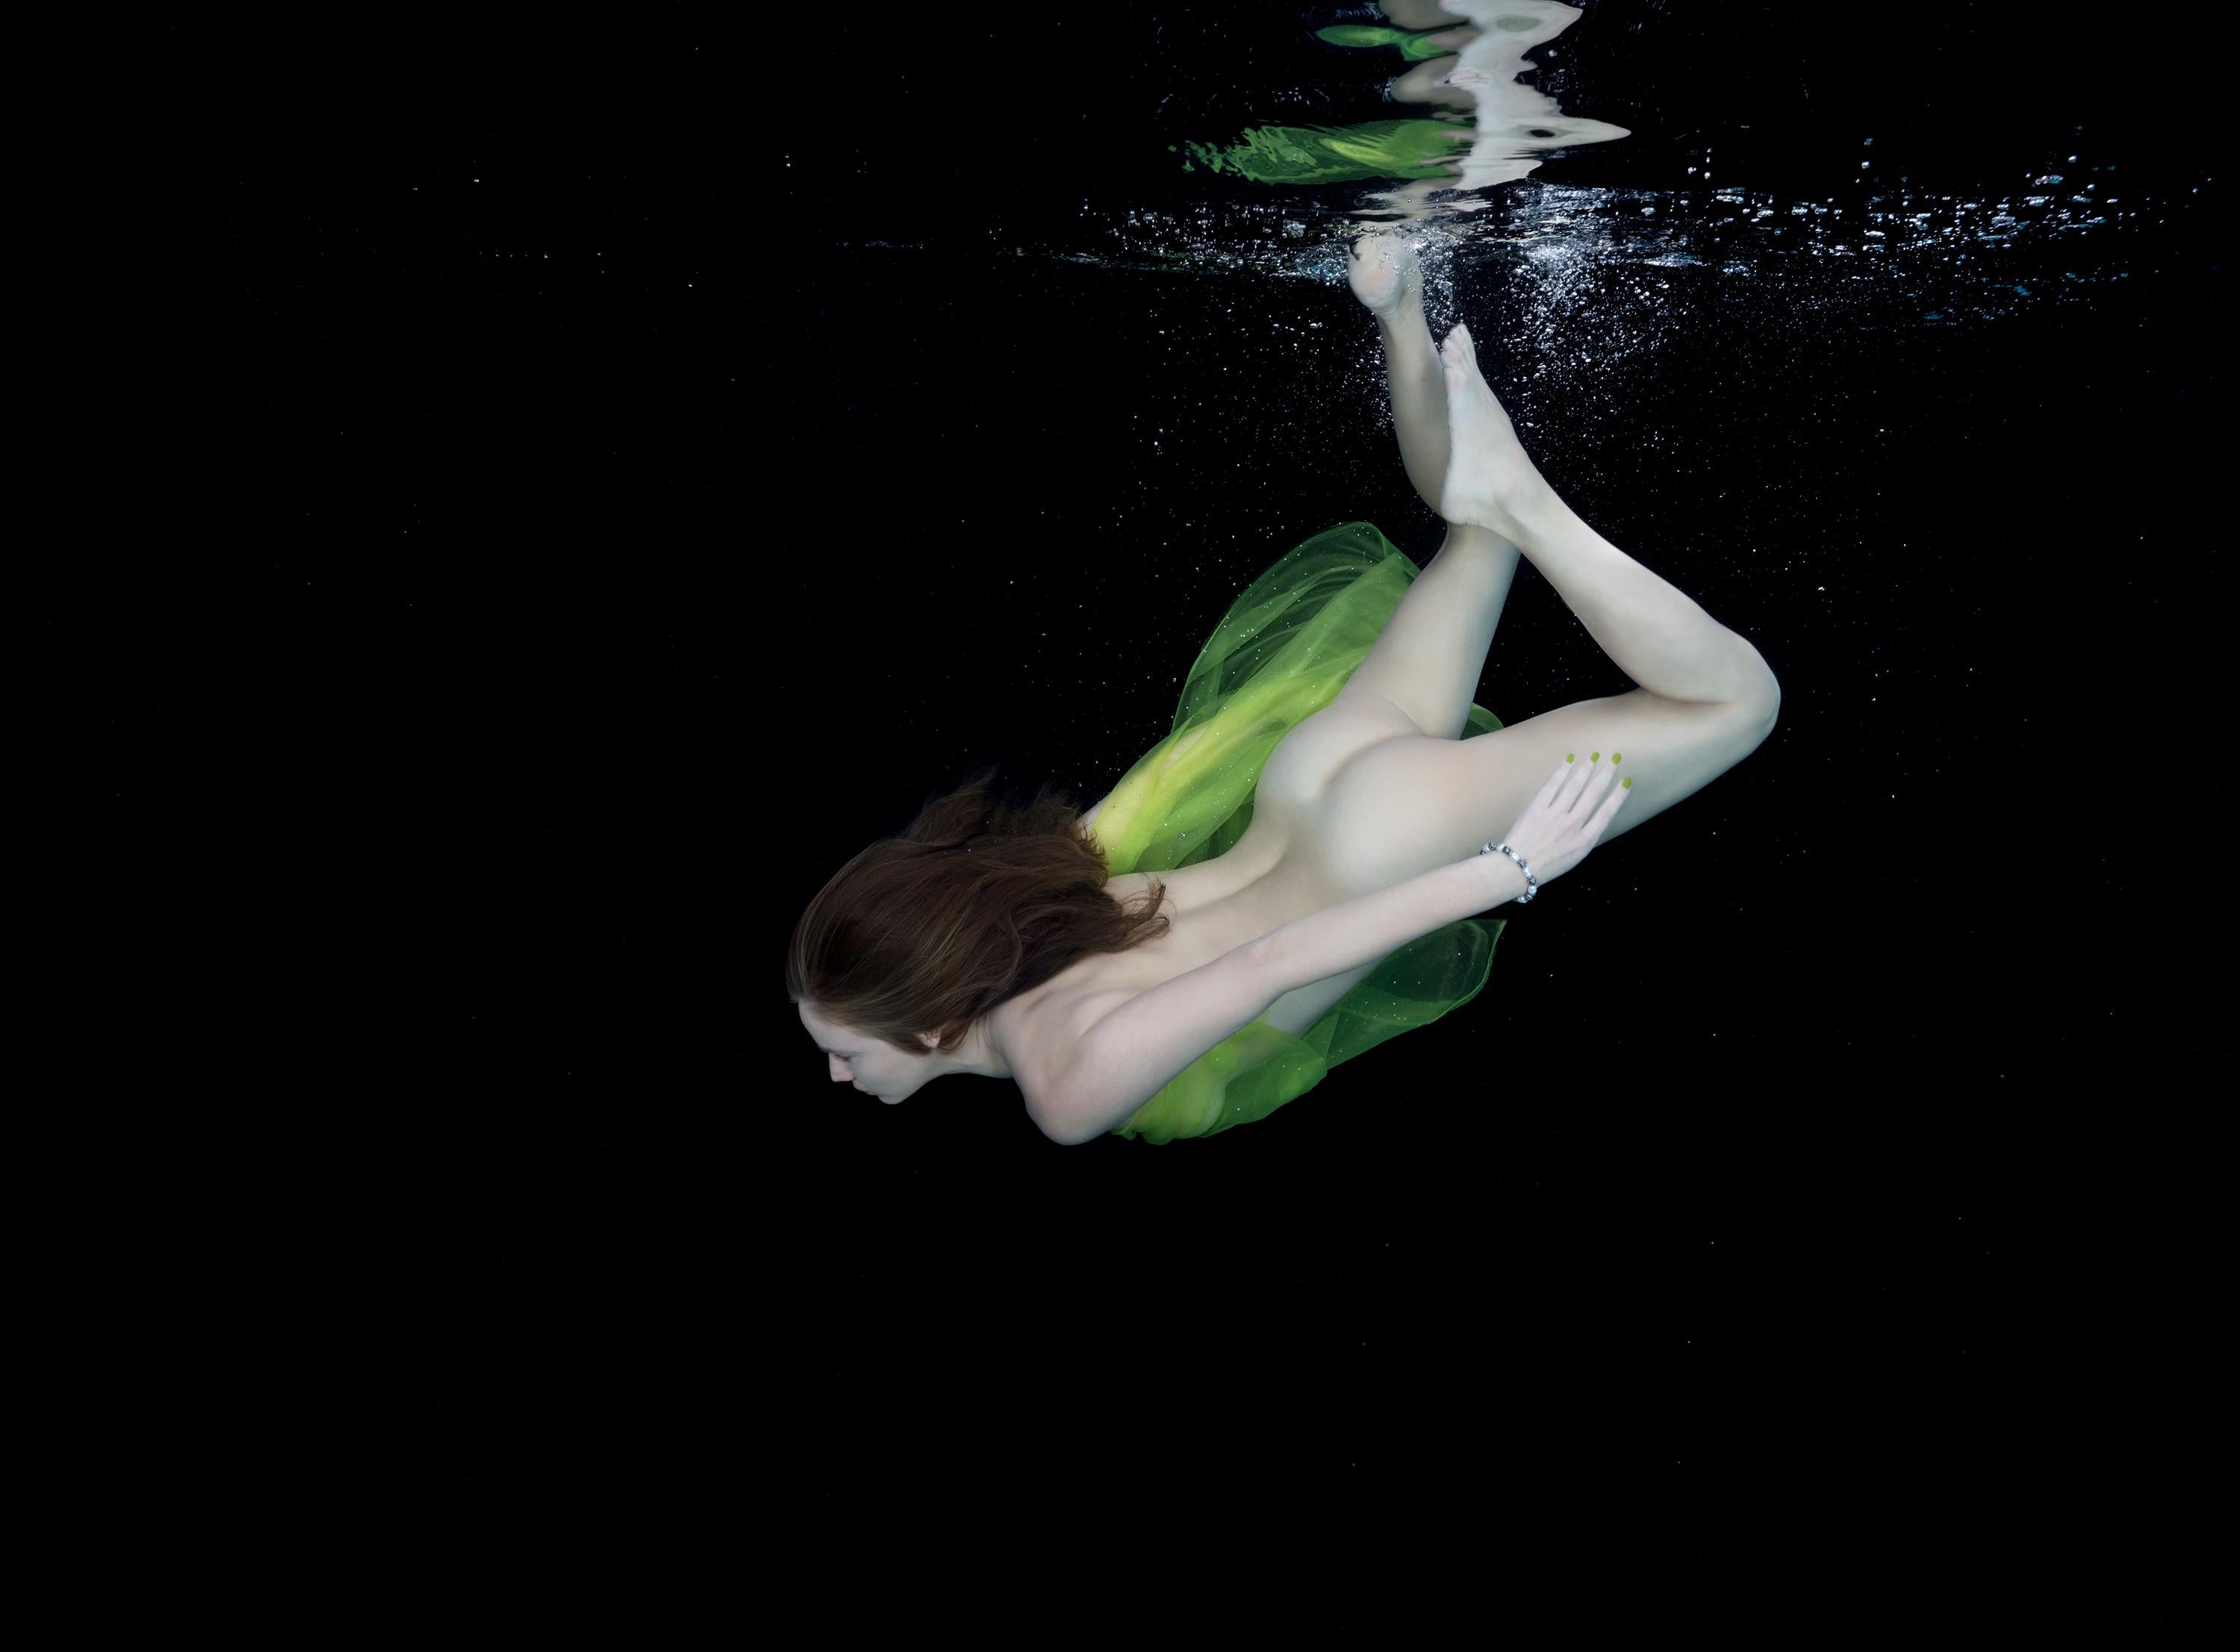 Alex Sher Nude Photograph – Unterwasser-Nacktfotografie – Archivalistischer Pigmentdruck 18" x 24"